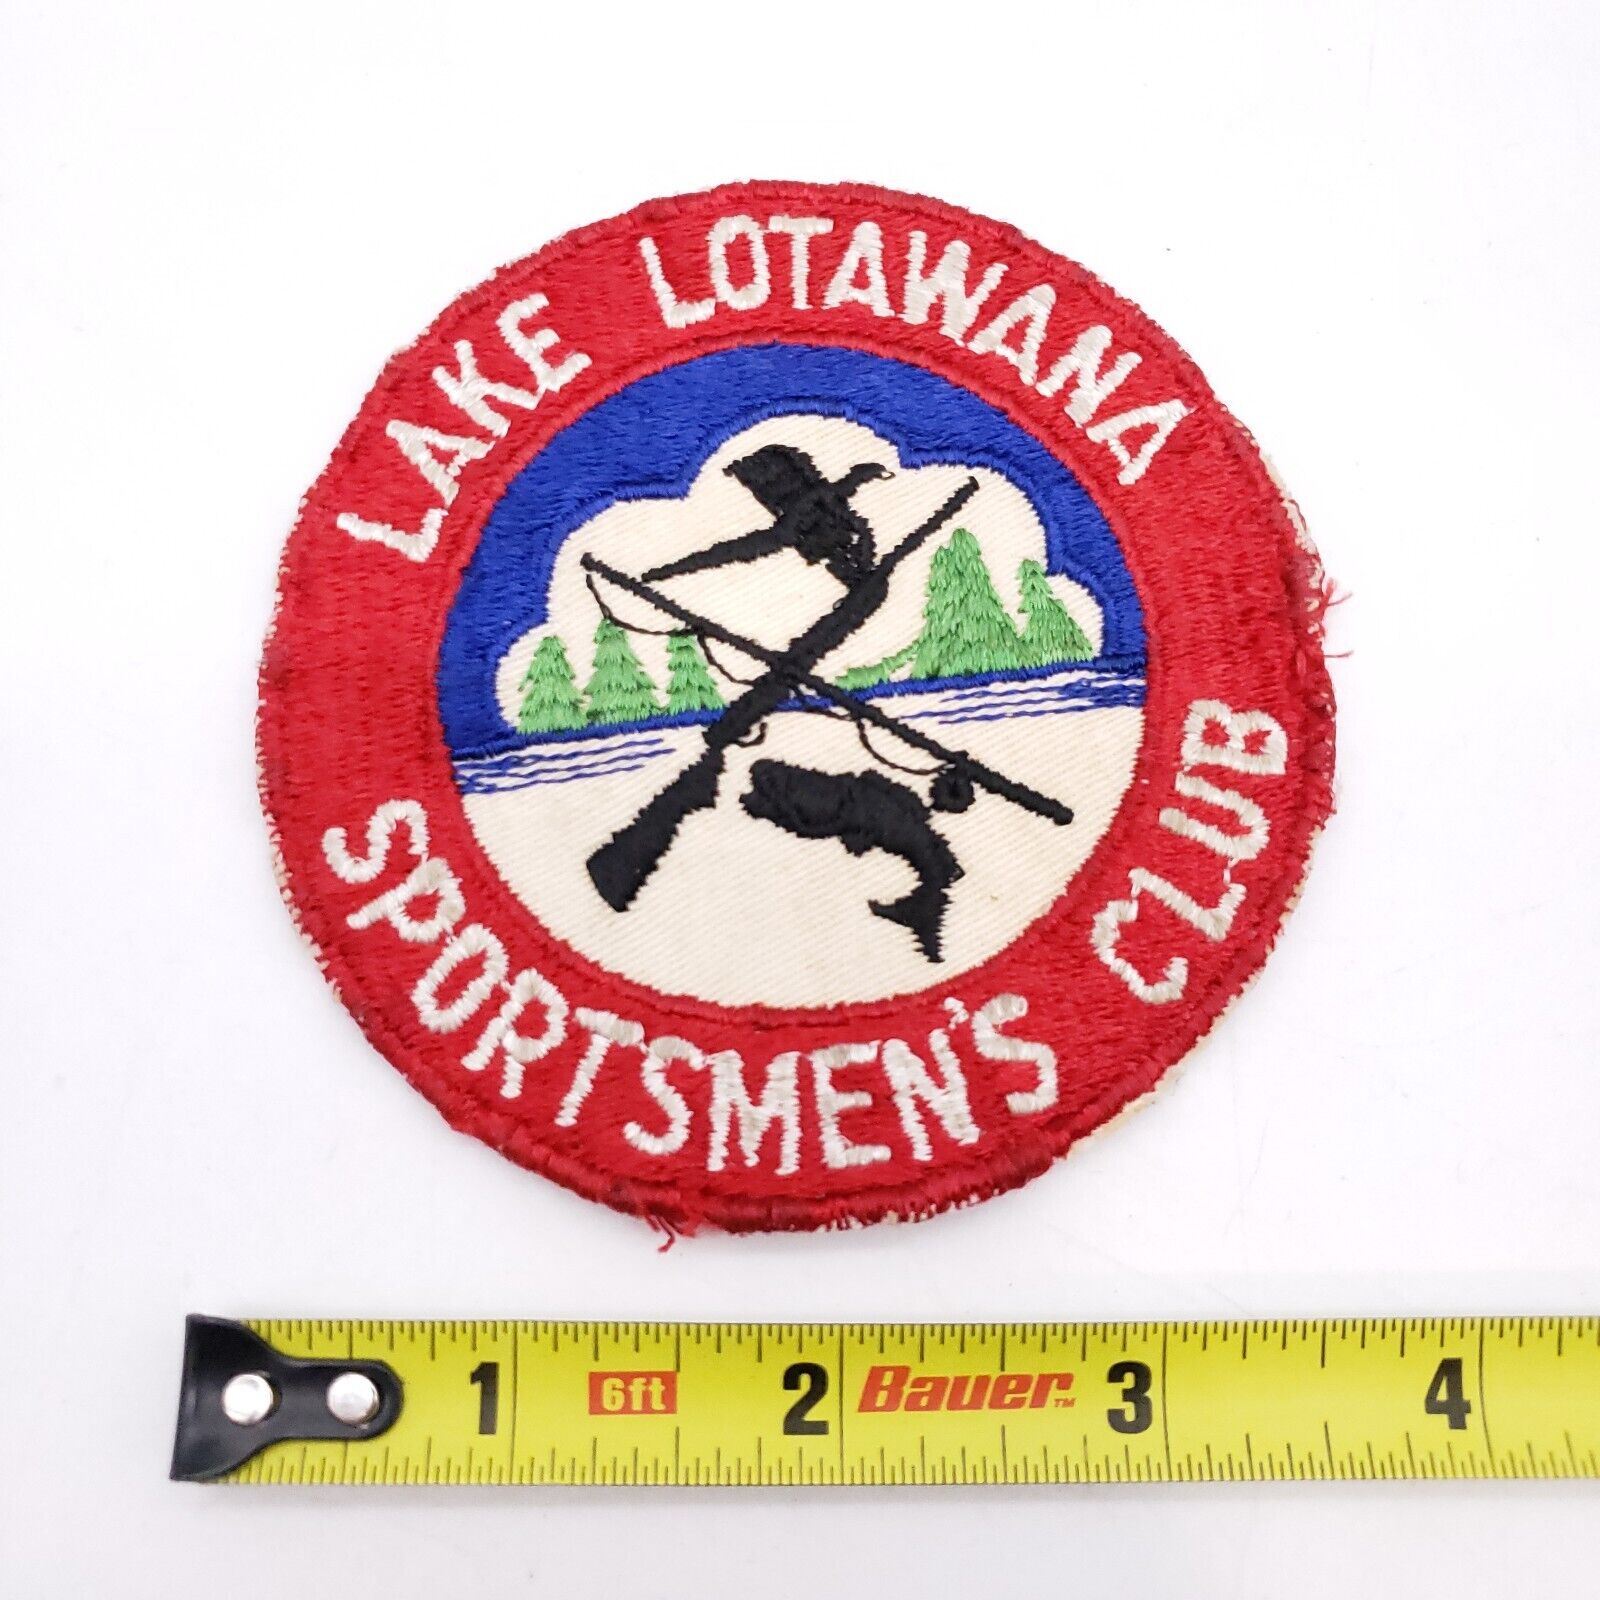 Vintage Lake Lotawana Sportmen's Club Patch